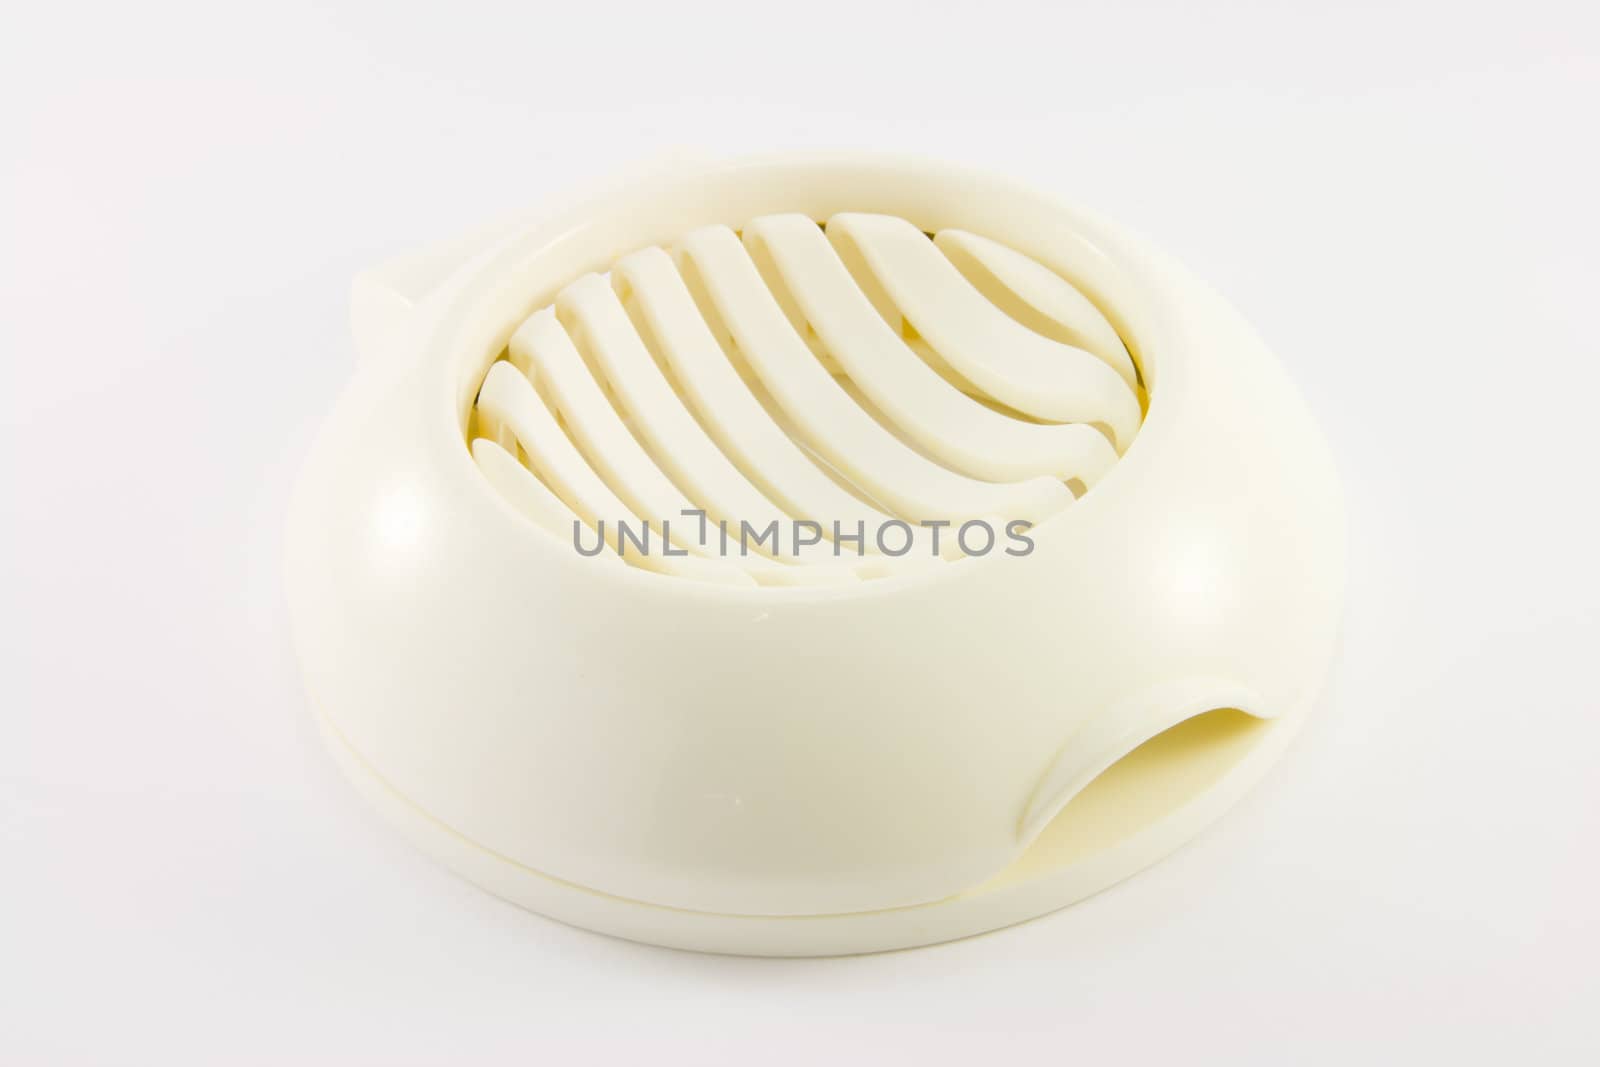 White plastic egg slicer on a whit background